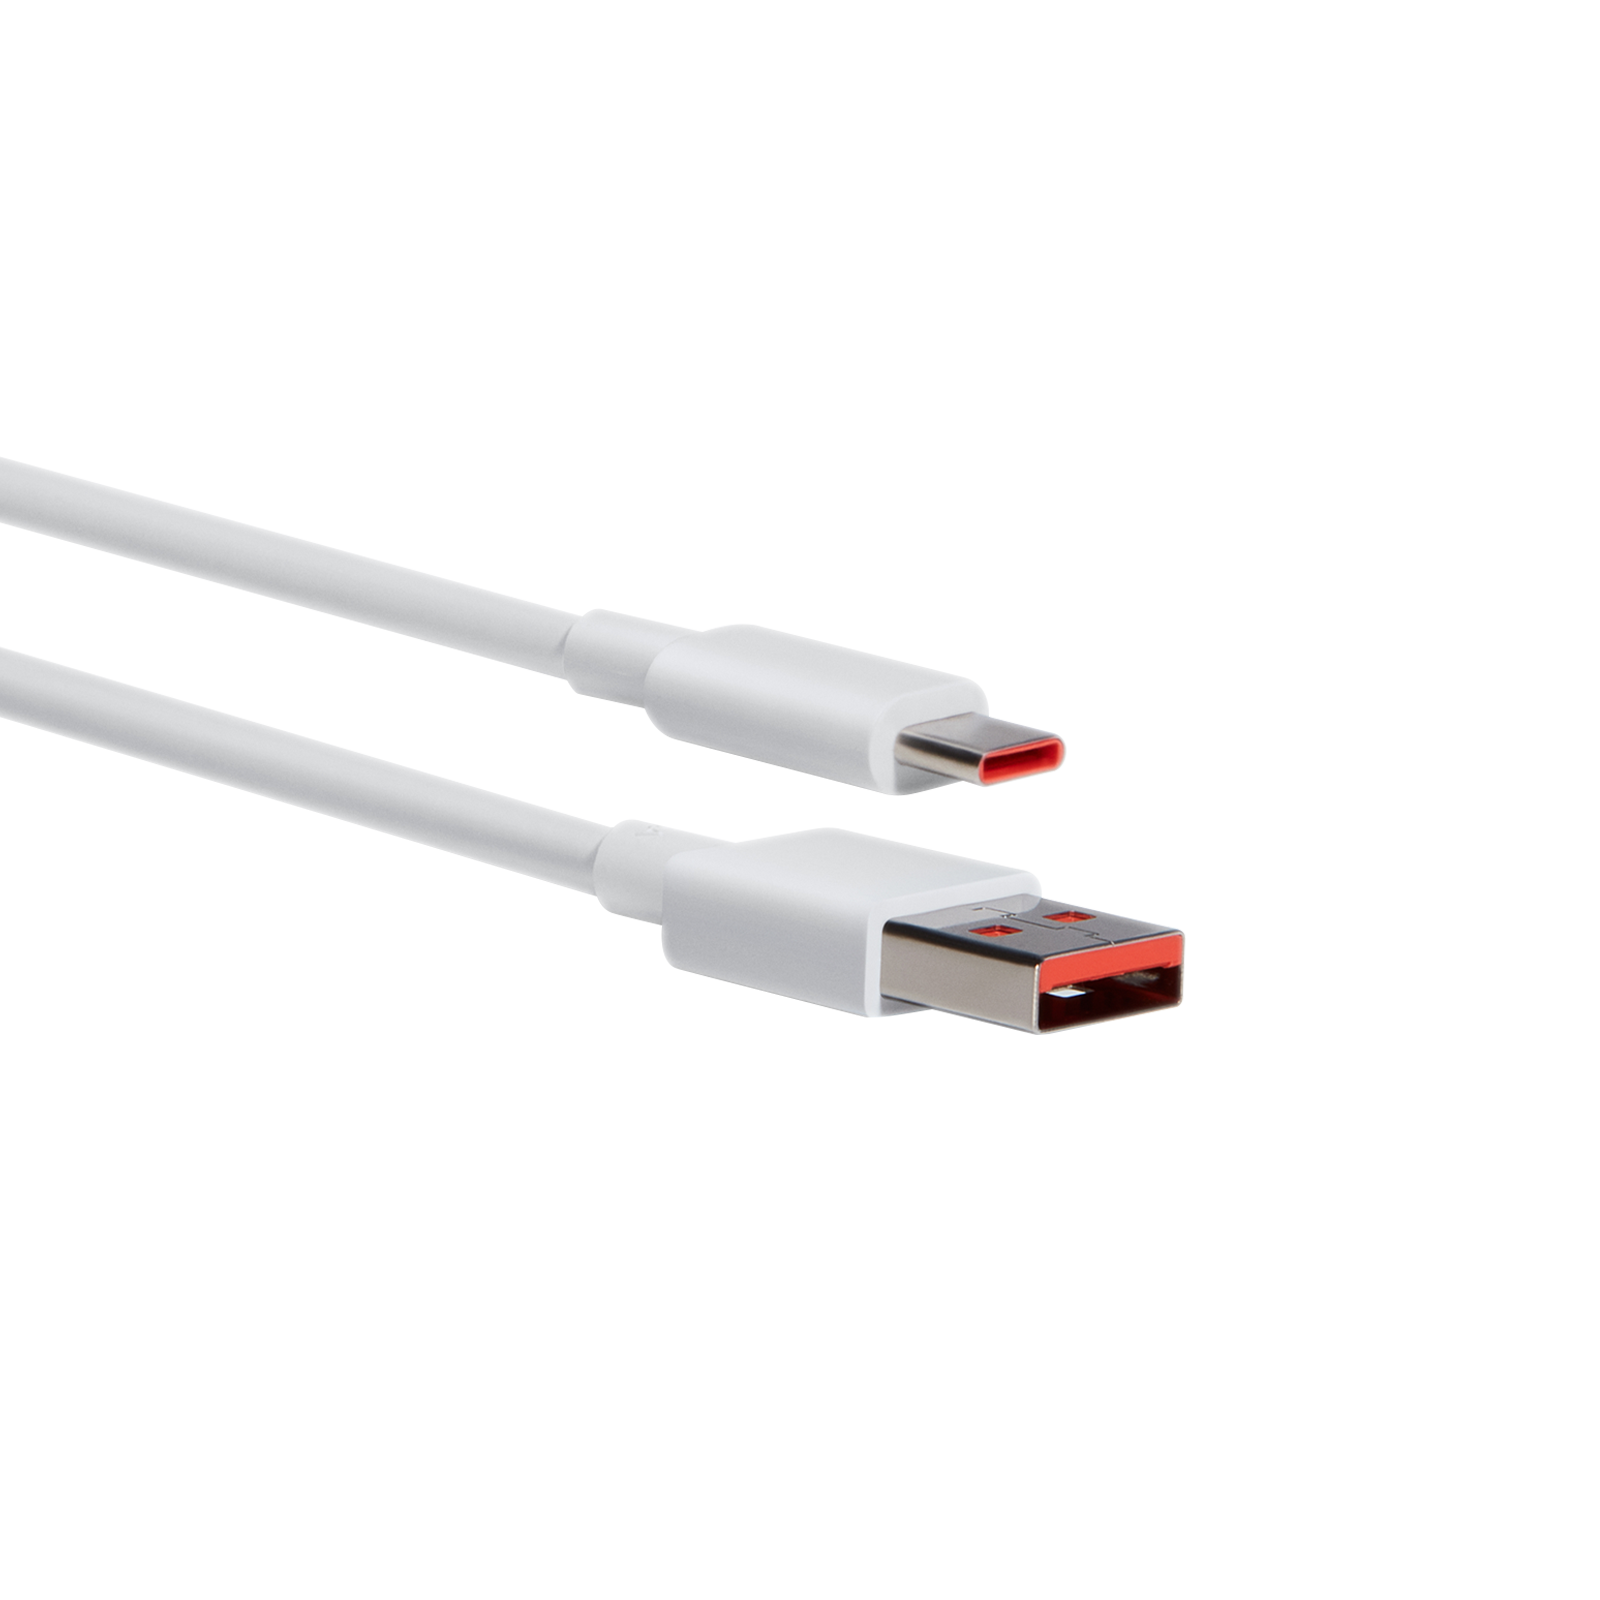 Xiaomi USB C to USB C cable de carga rapida